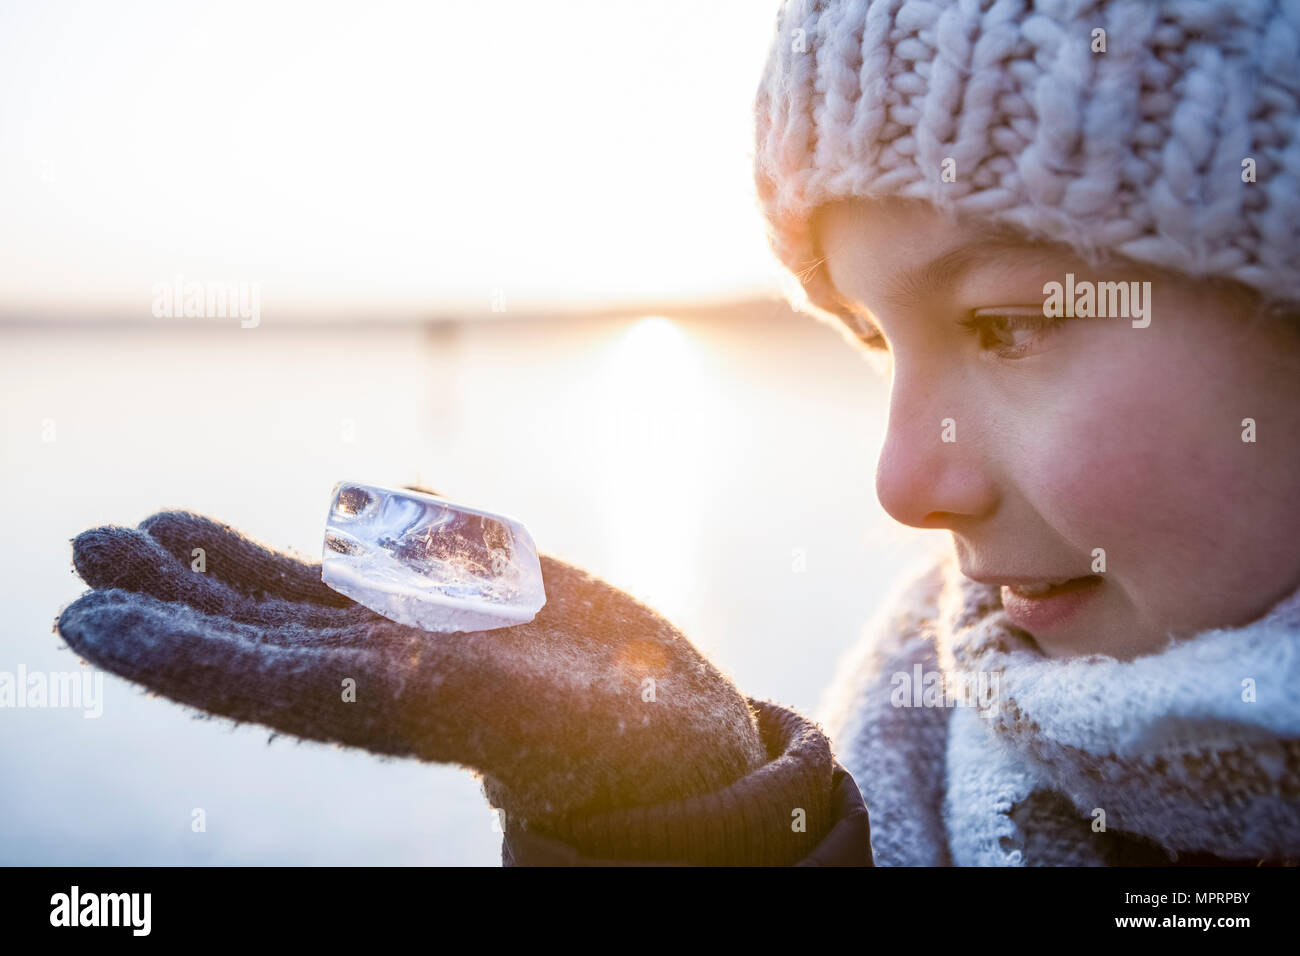 La Germania, il Land Brandeburgo, Lago Straussee, ritratto di una ragazza in piedi sul lago ghiacciato, guardando il pezzo di ghiaccio sulla sua mano Foto Stock